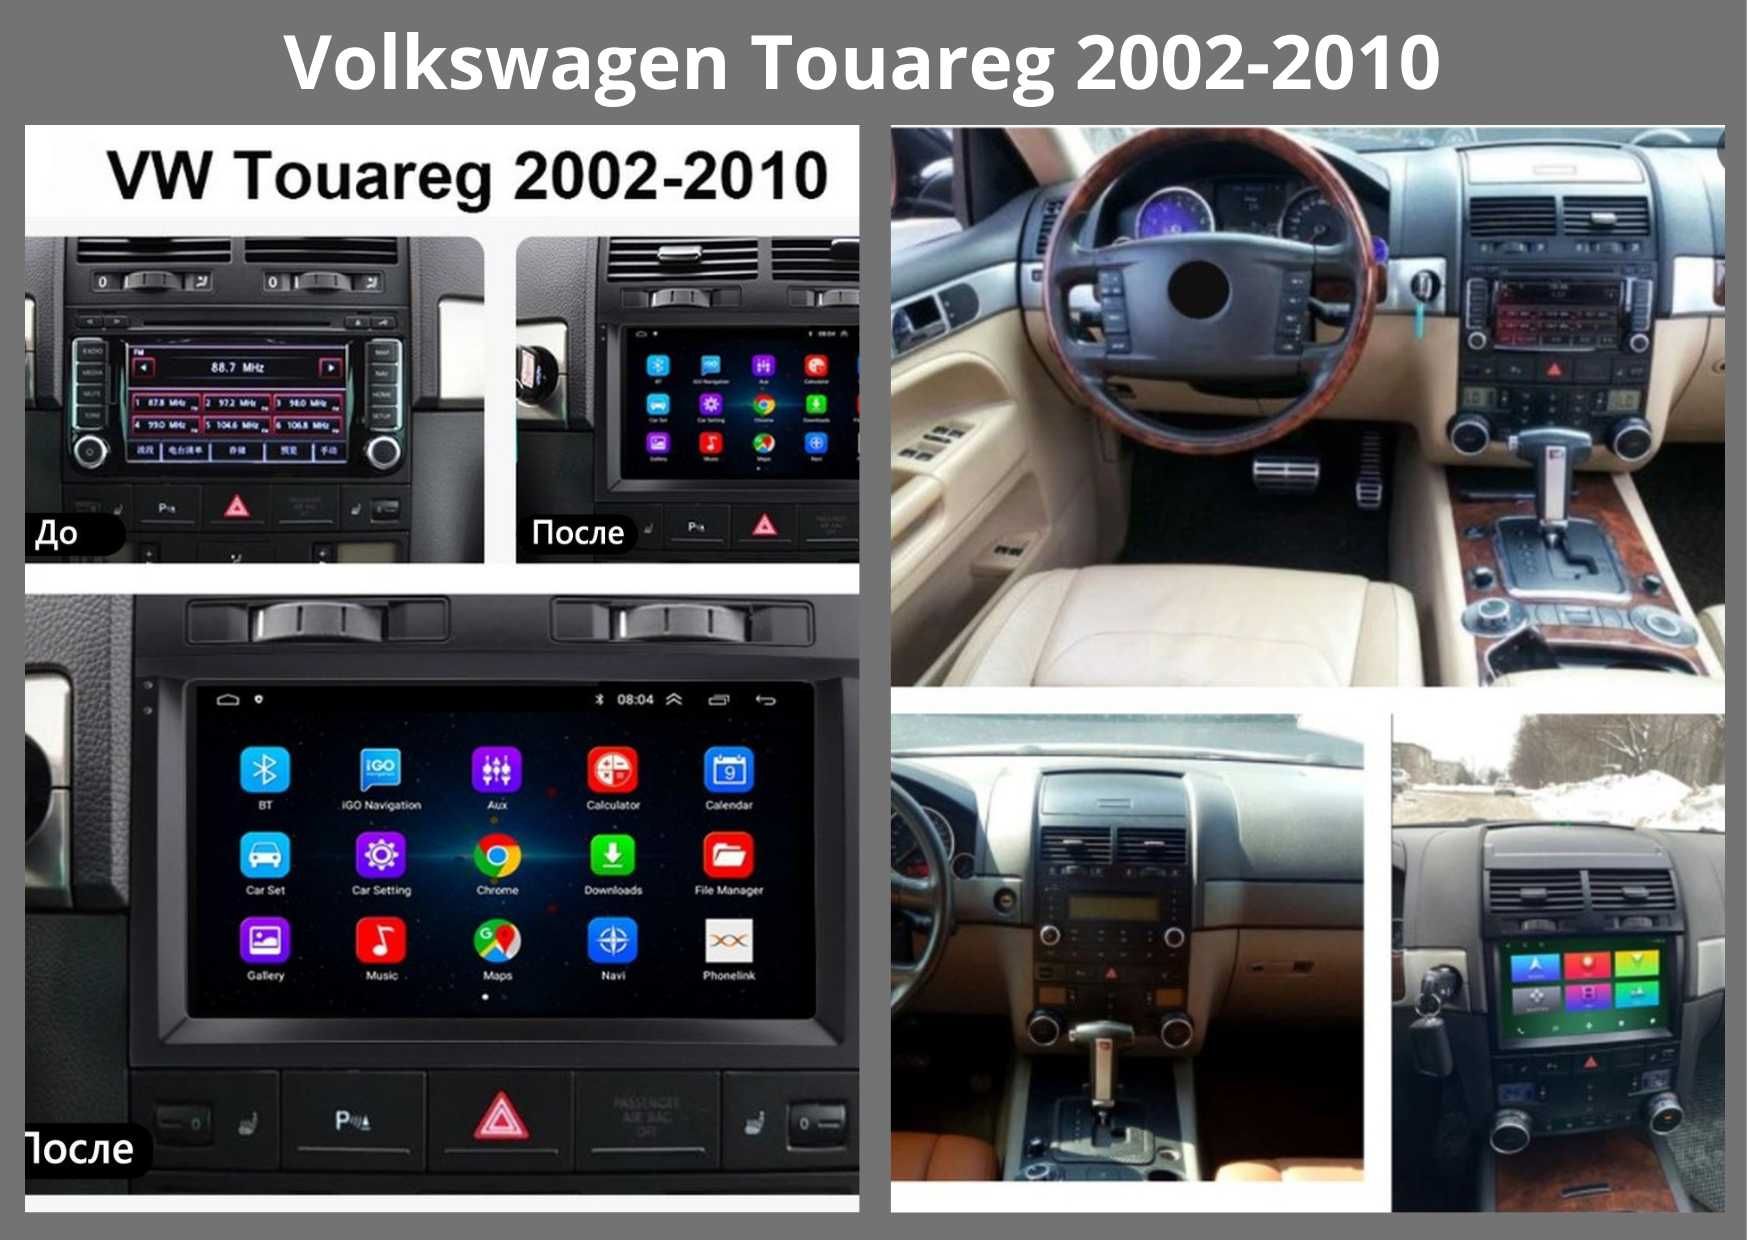 Штатні Магнітоли VW Tiguan 2010-16, Touareg 2002-10, 2010-18 FL, NF